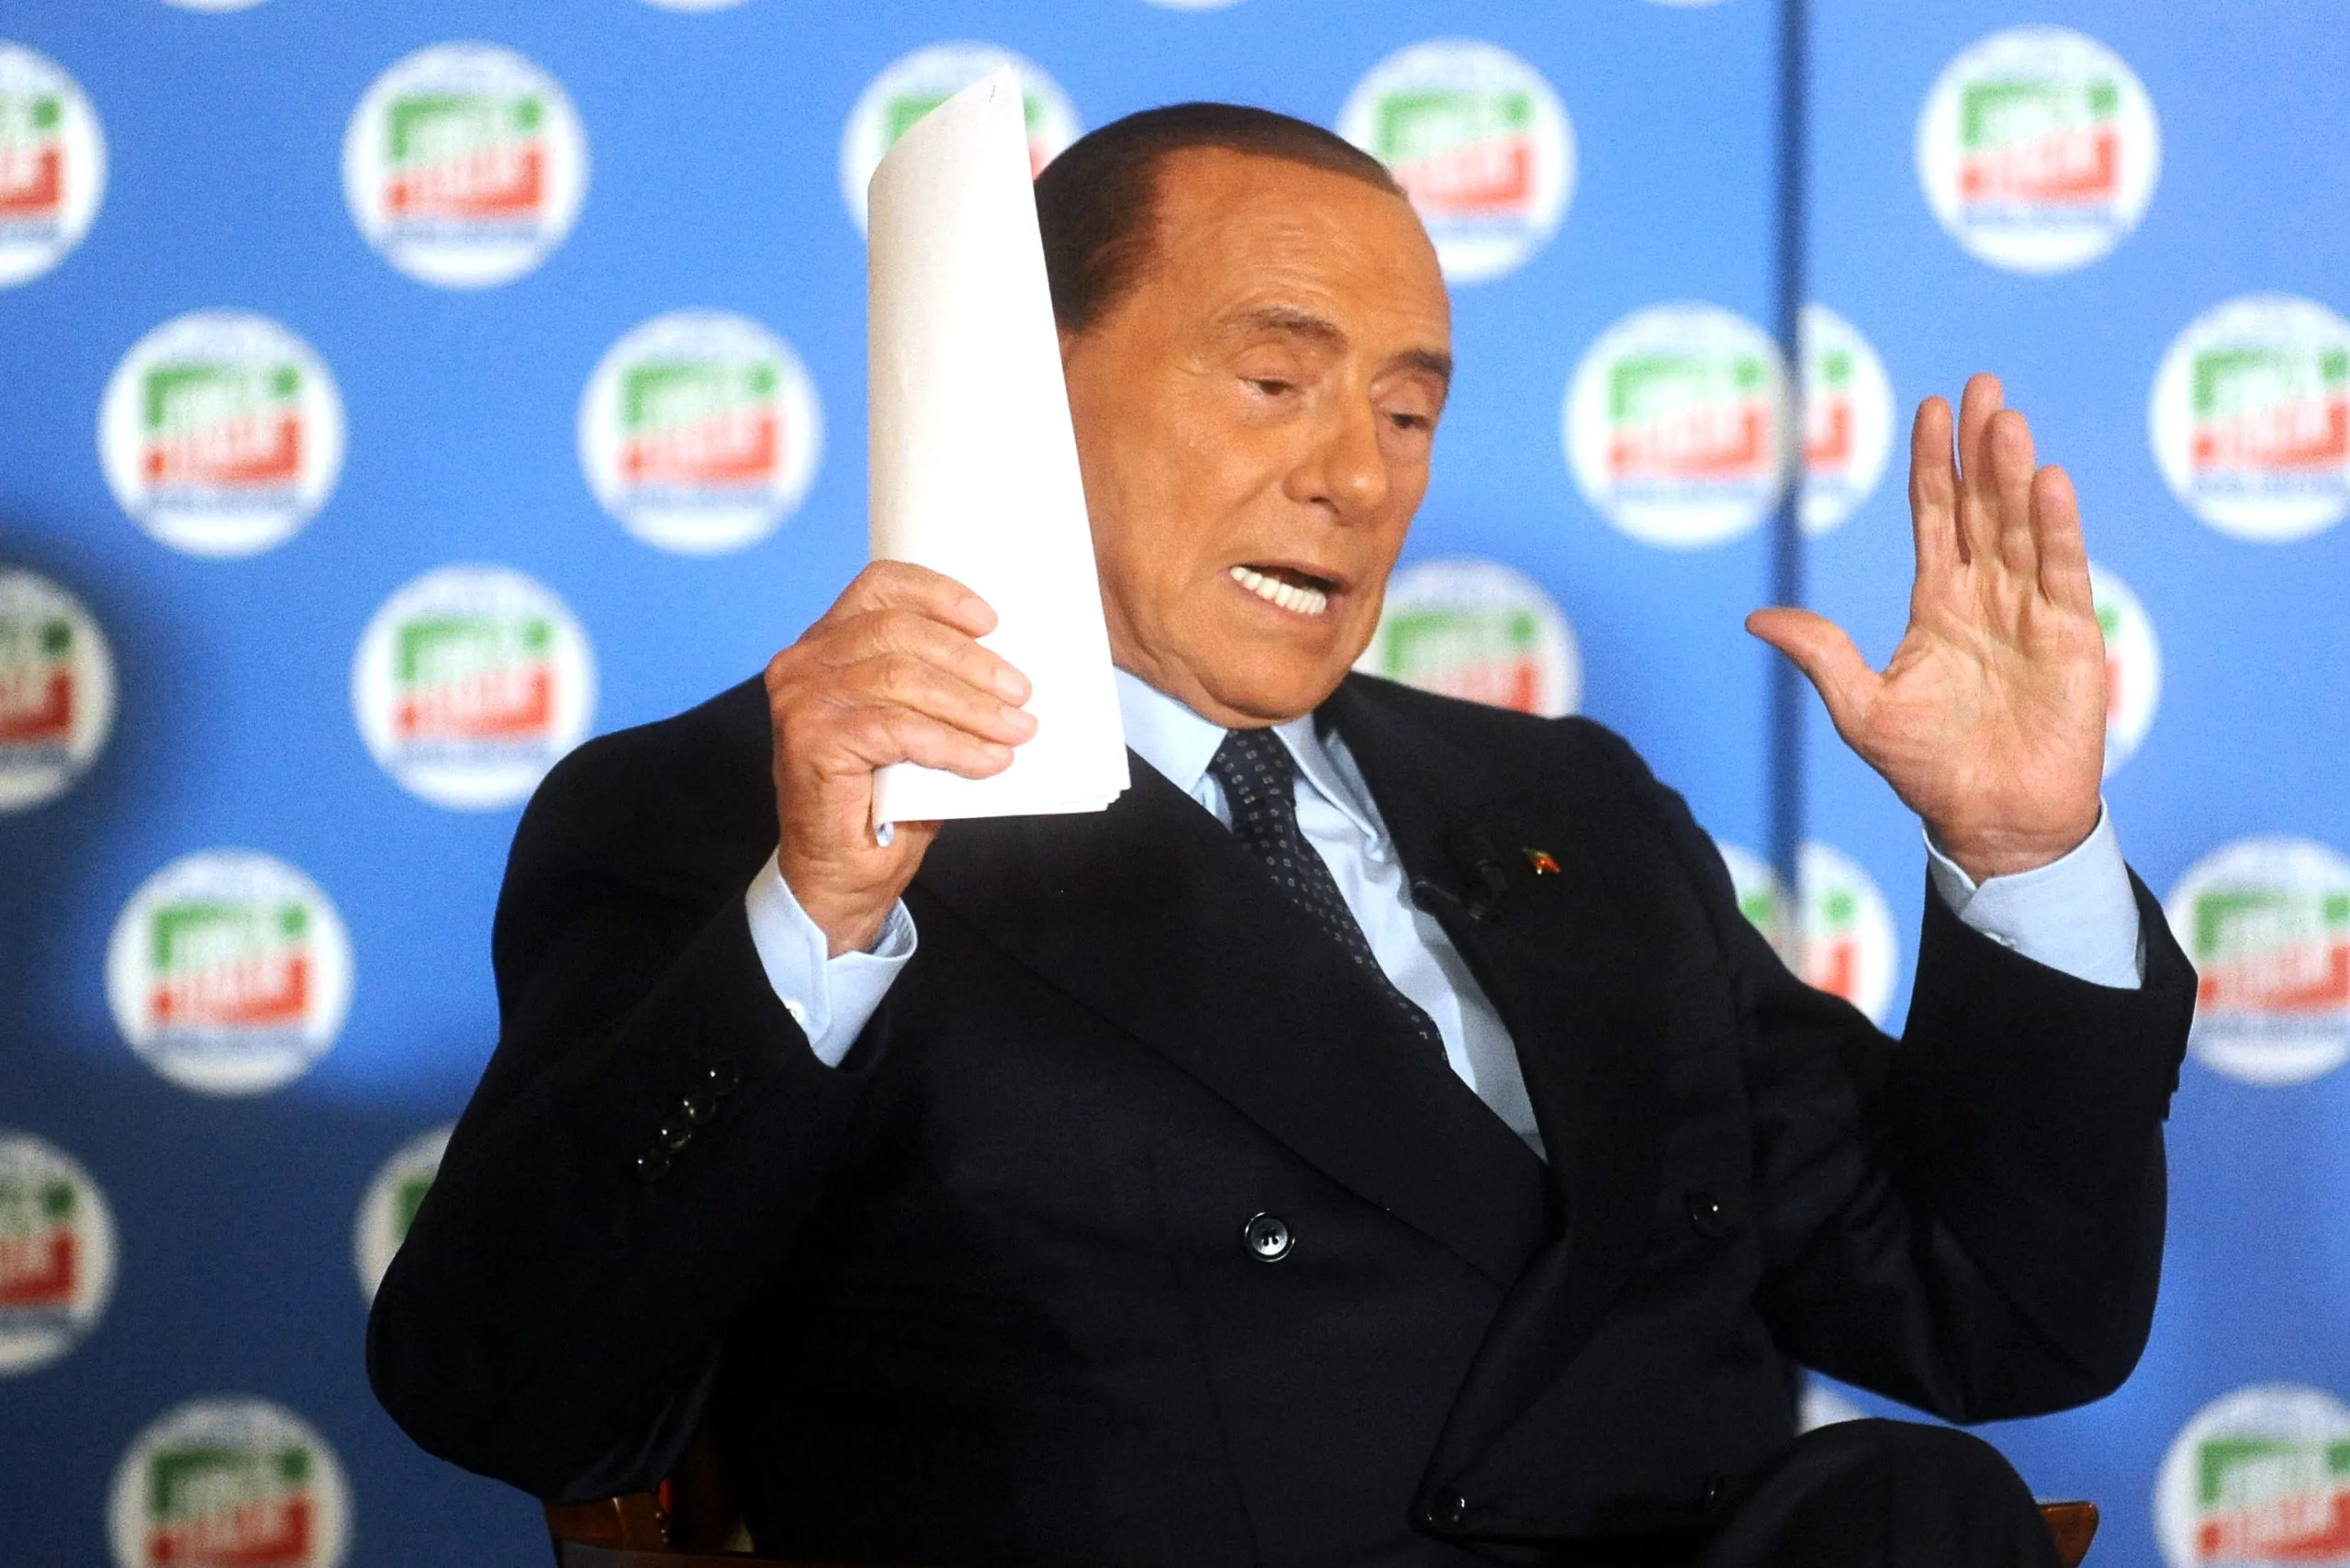 Silvio Berlusconi, polemica per le sue frasi su Putin: “Gli ho regalato Lambrusco, l’ho conosciuto come uomo di pace”